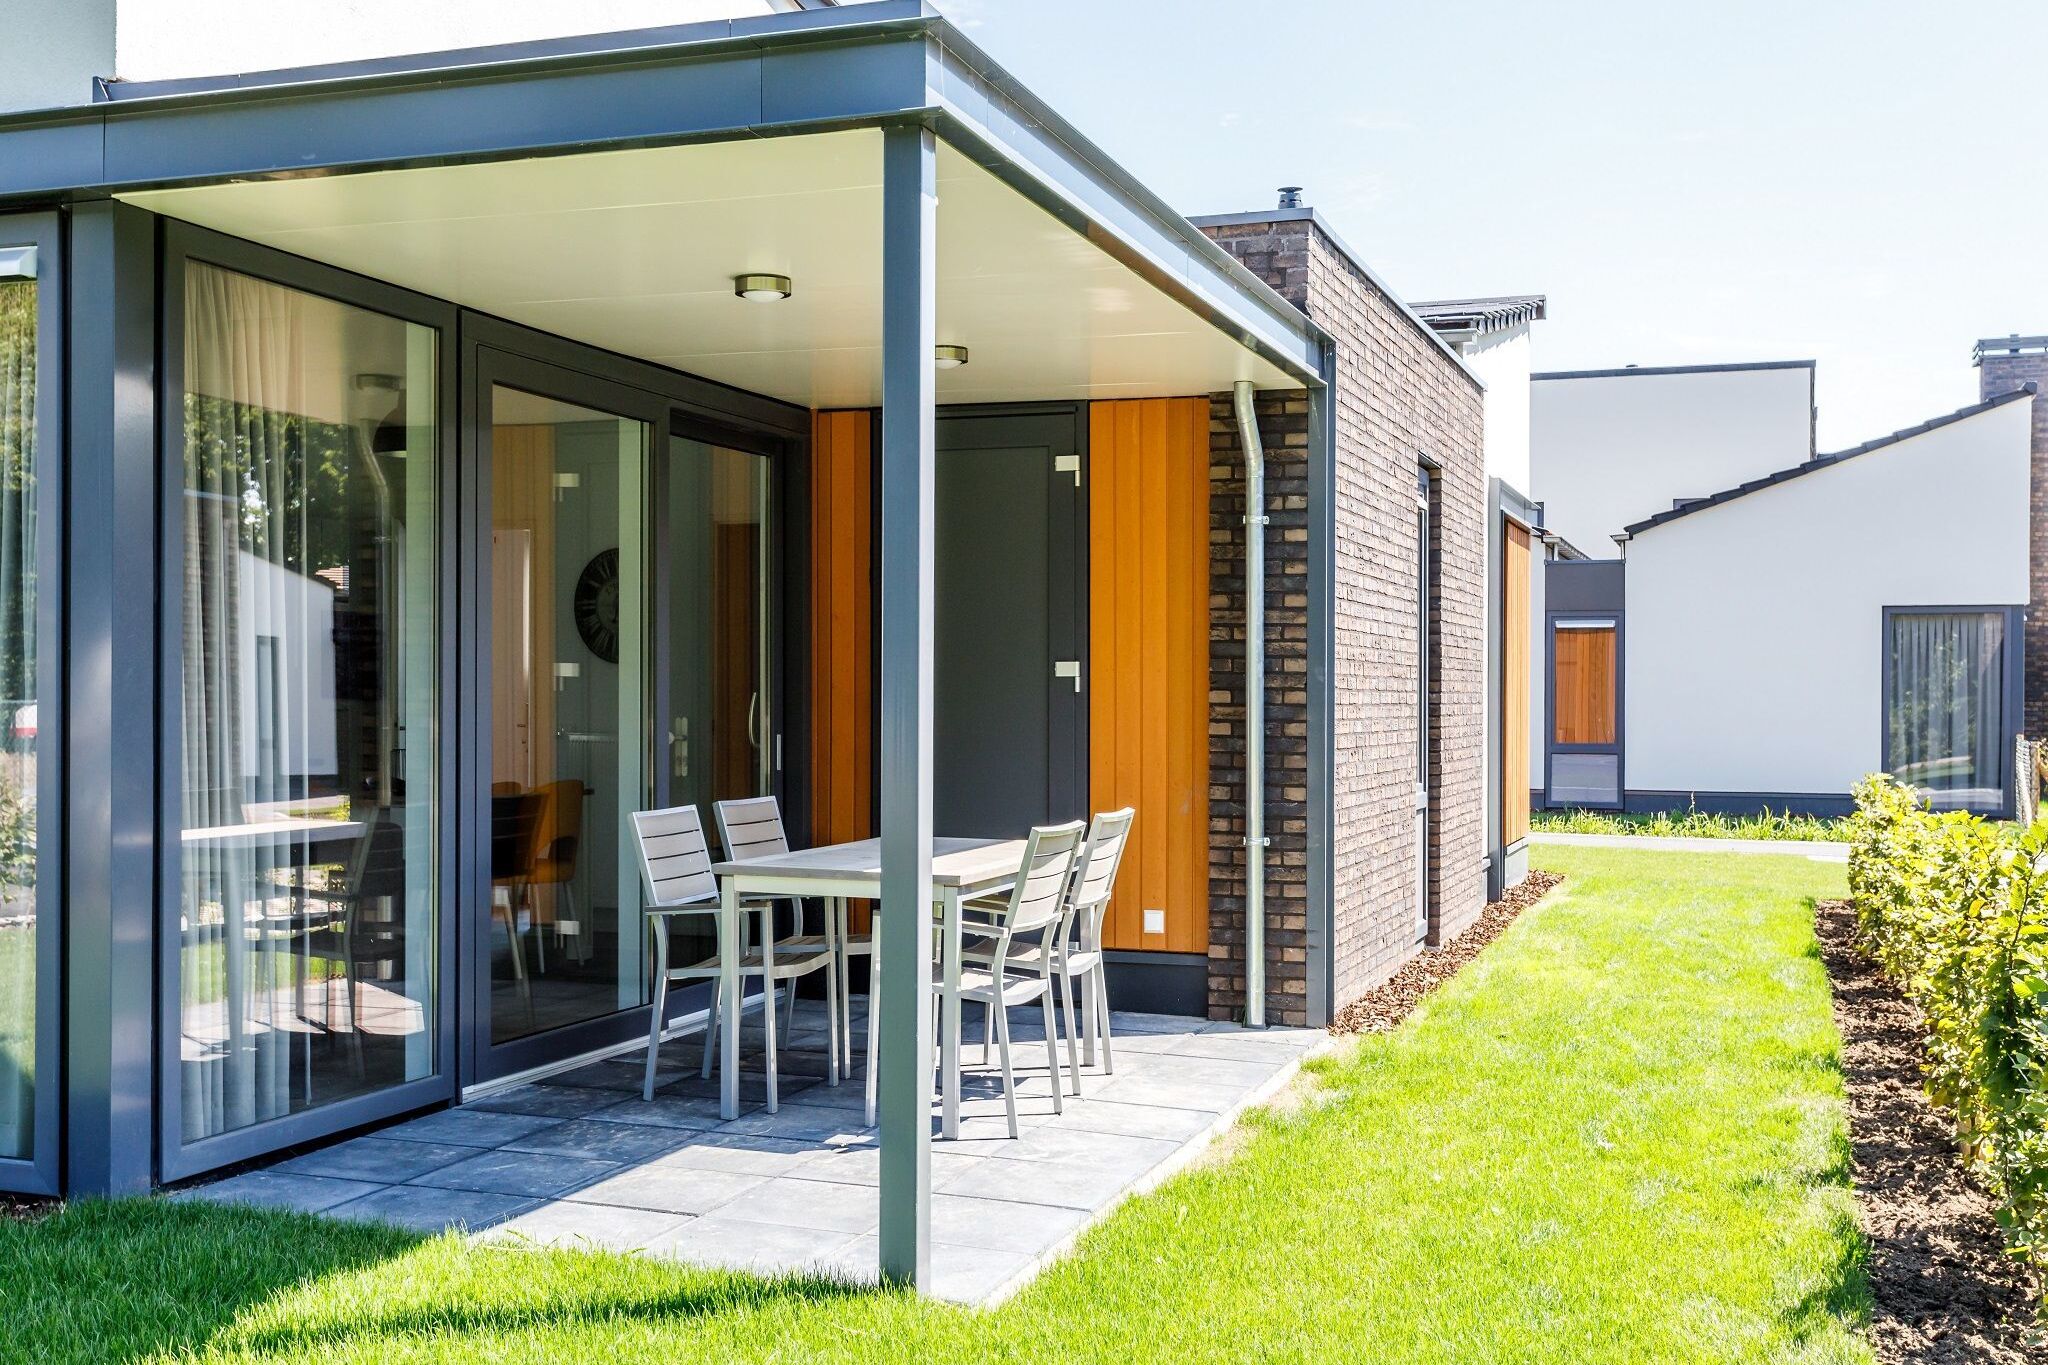 Villa mit einer überdachten Terrasse in Limburg